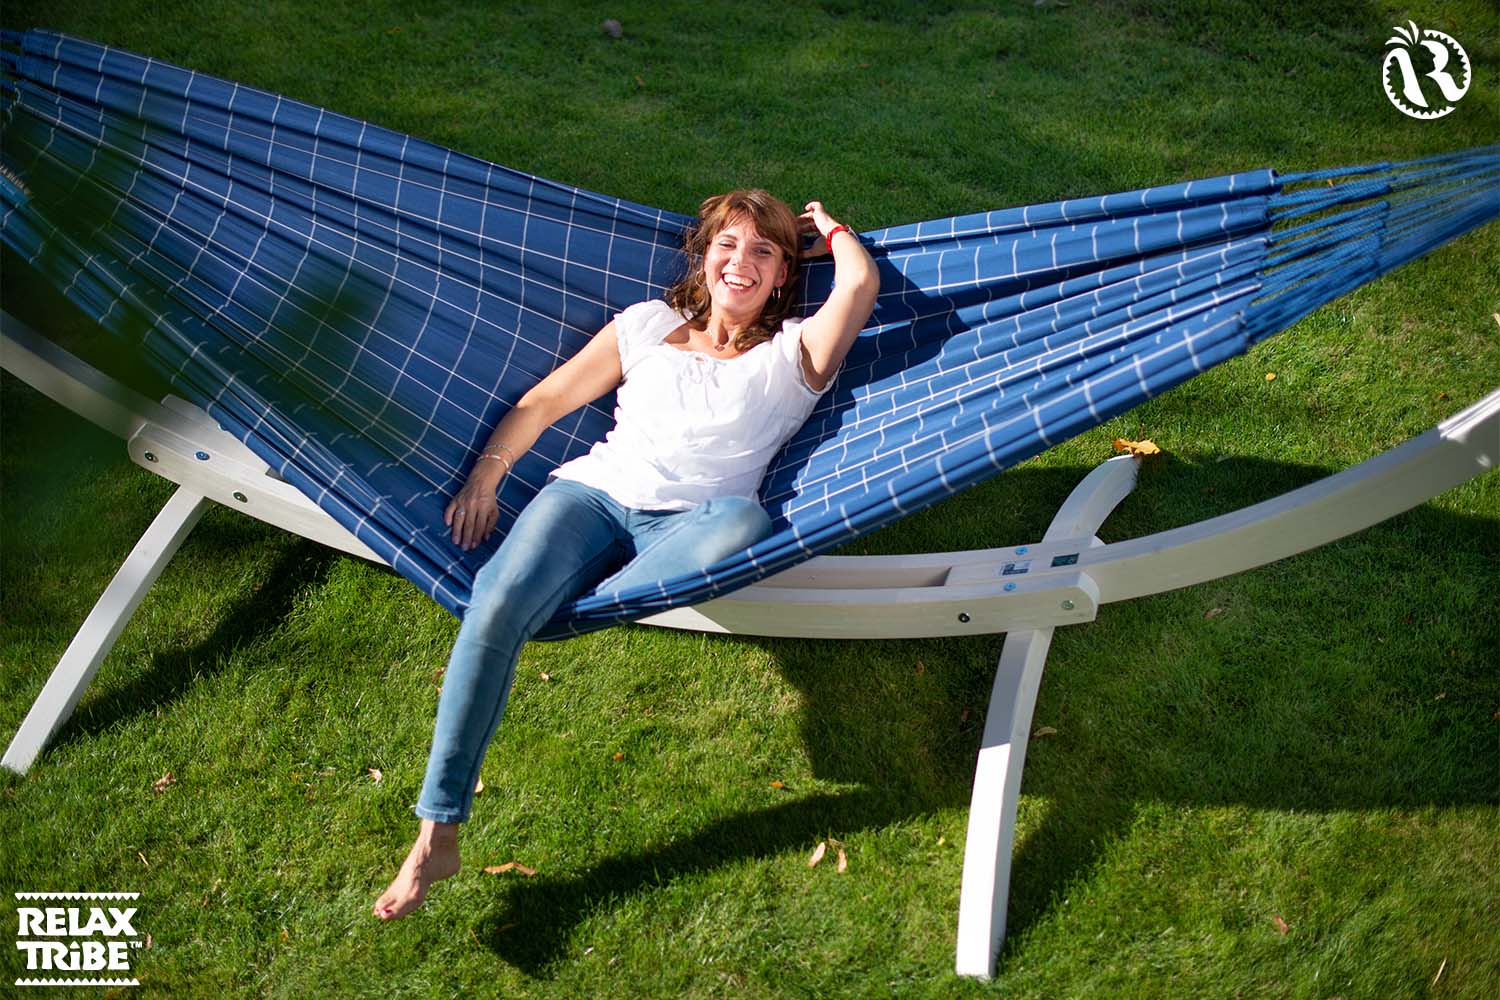 brisa-marine-weatherproof-hammock-home-garden-handmade-dark-blue-pattern-wood-stand